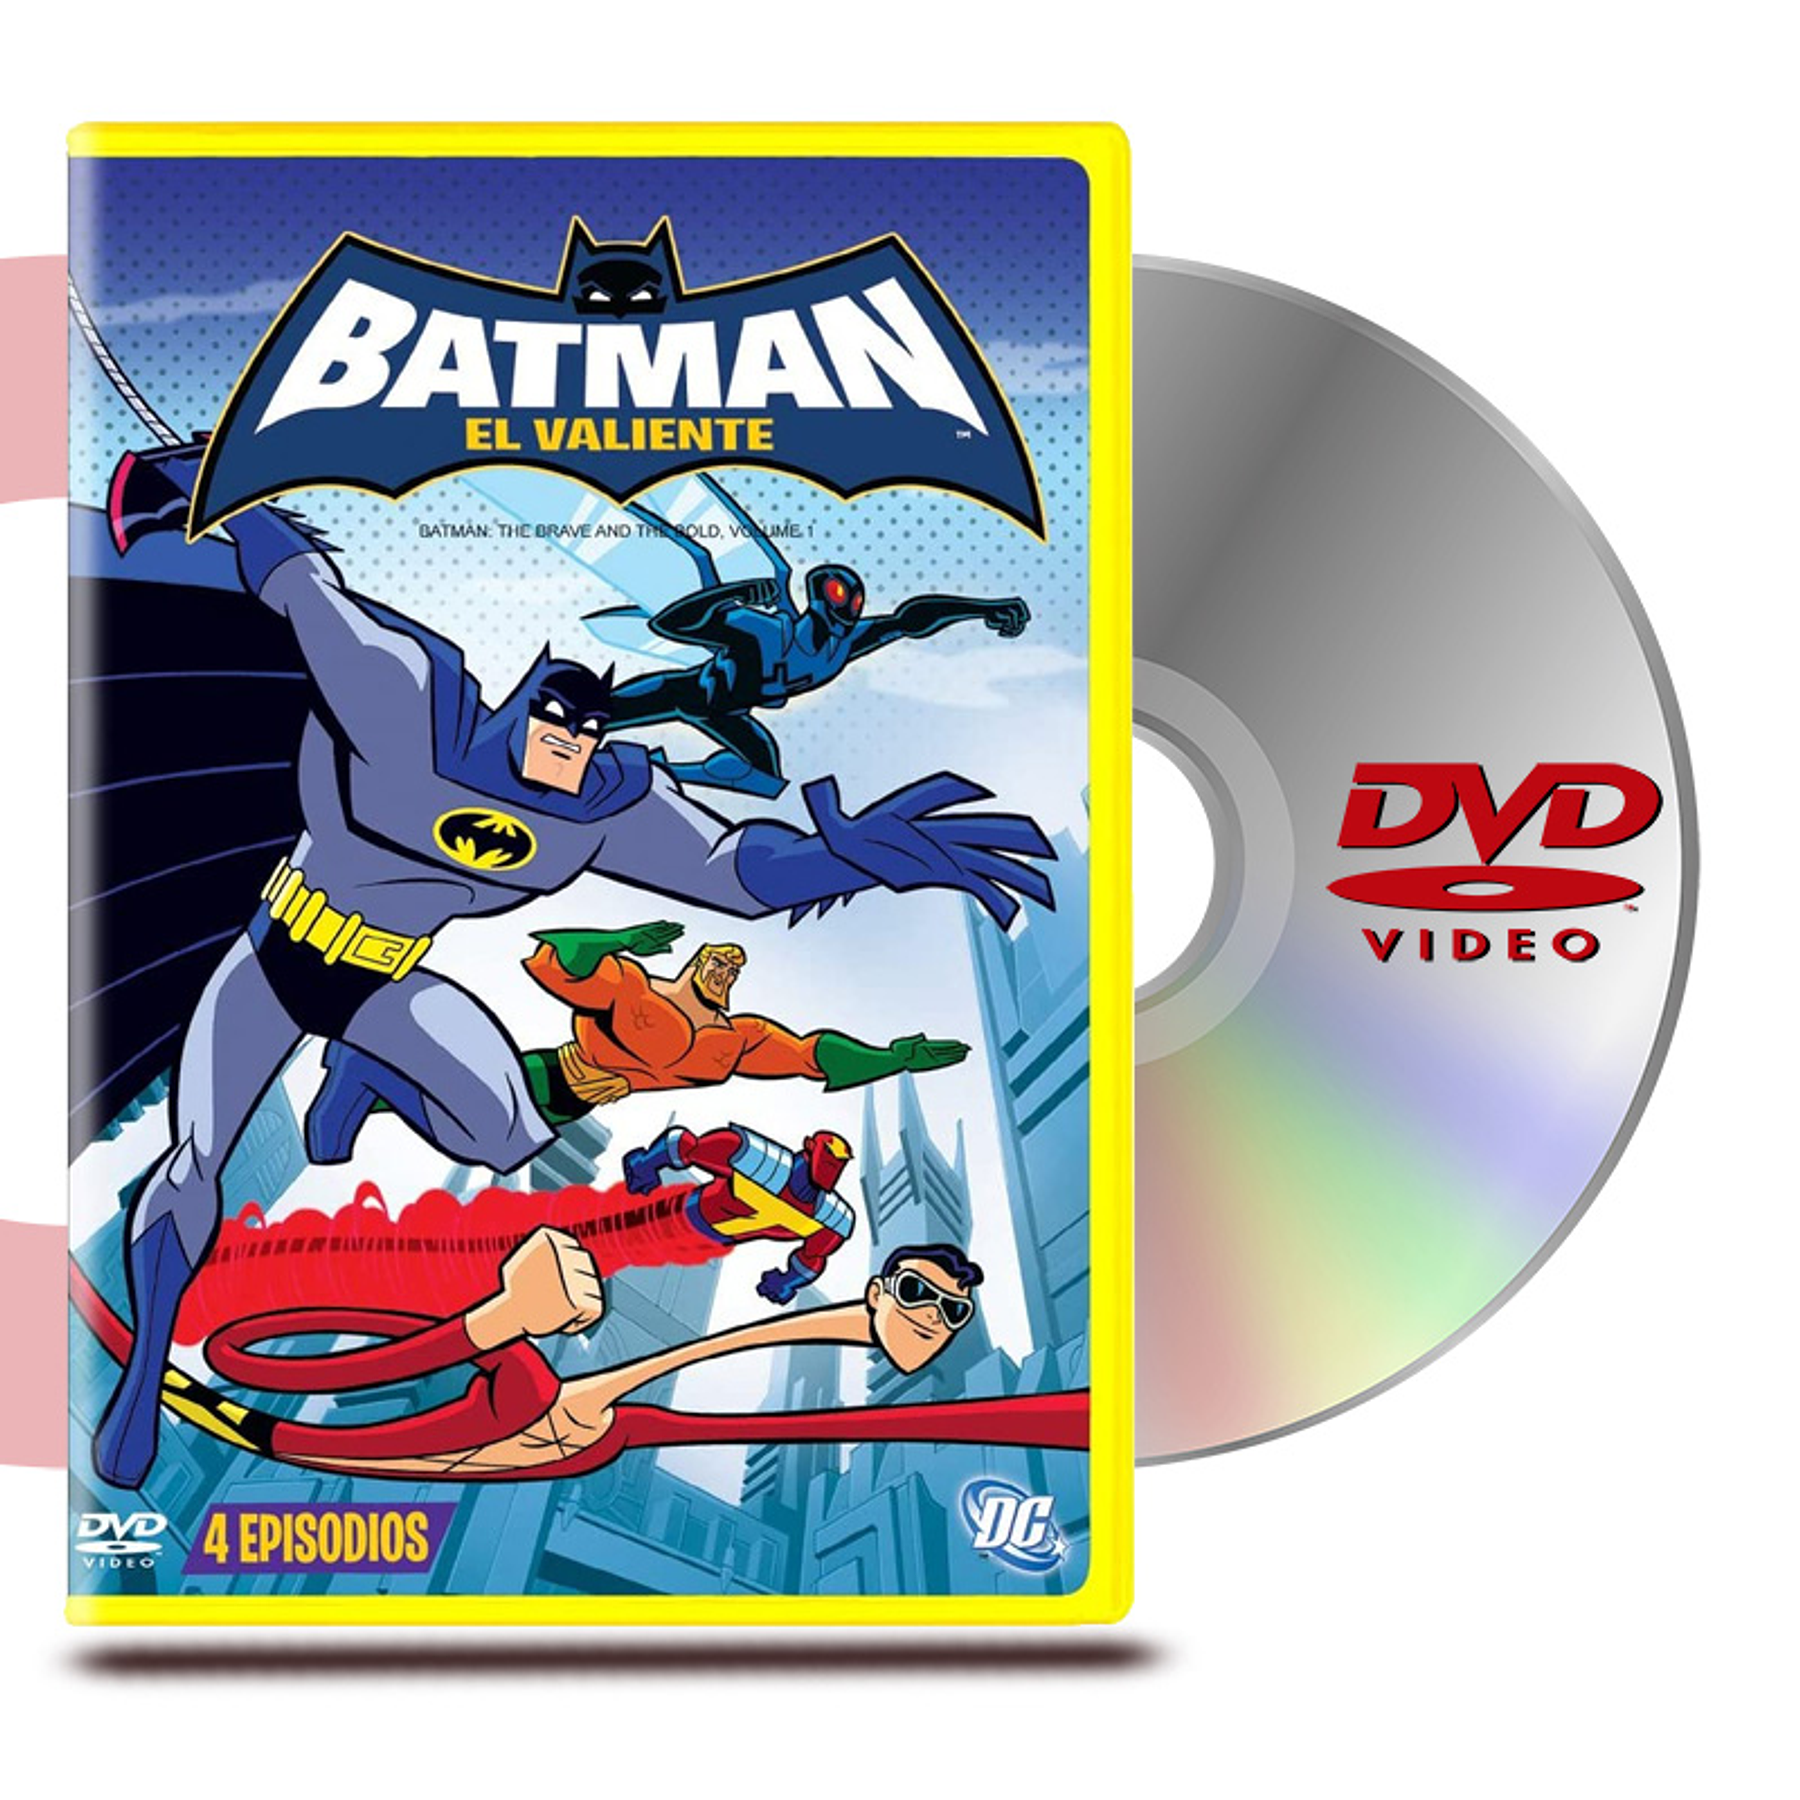 DVD BATMAN EL VALIENTE VOL 1